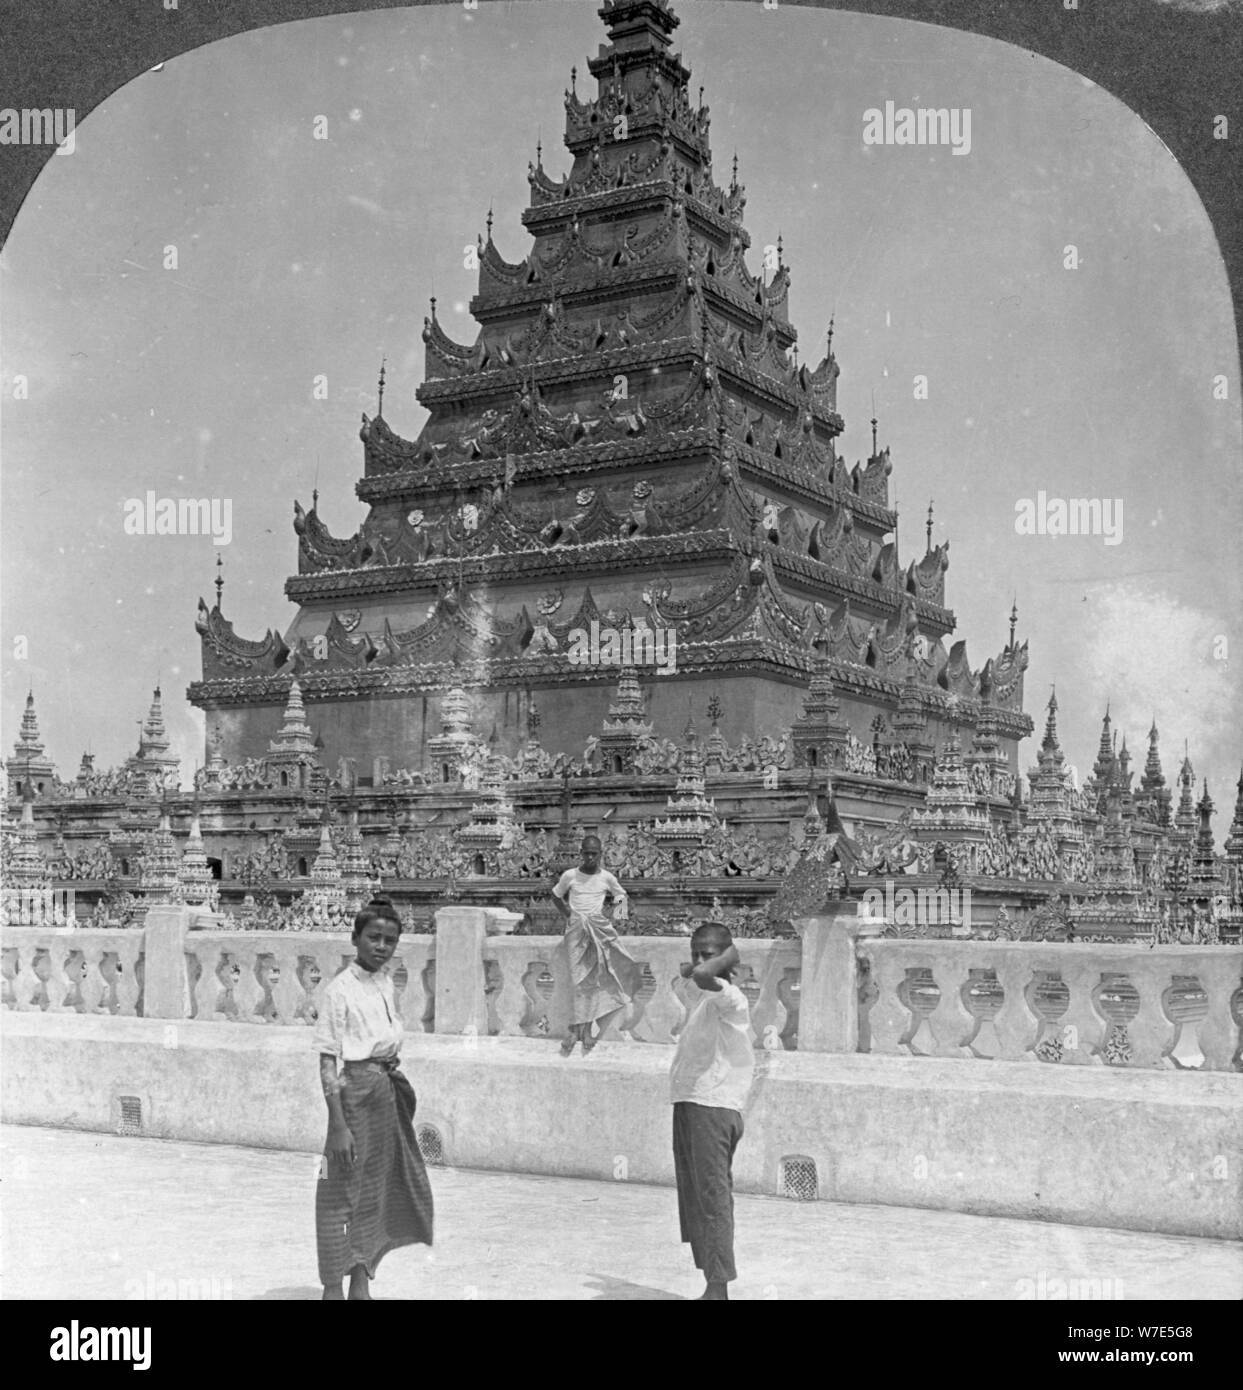 Arakan Pagoda, Mandalay, Burma, 1908.  Artist: Stereo Travel Co Stock Photo